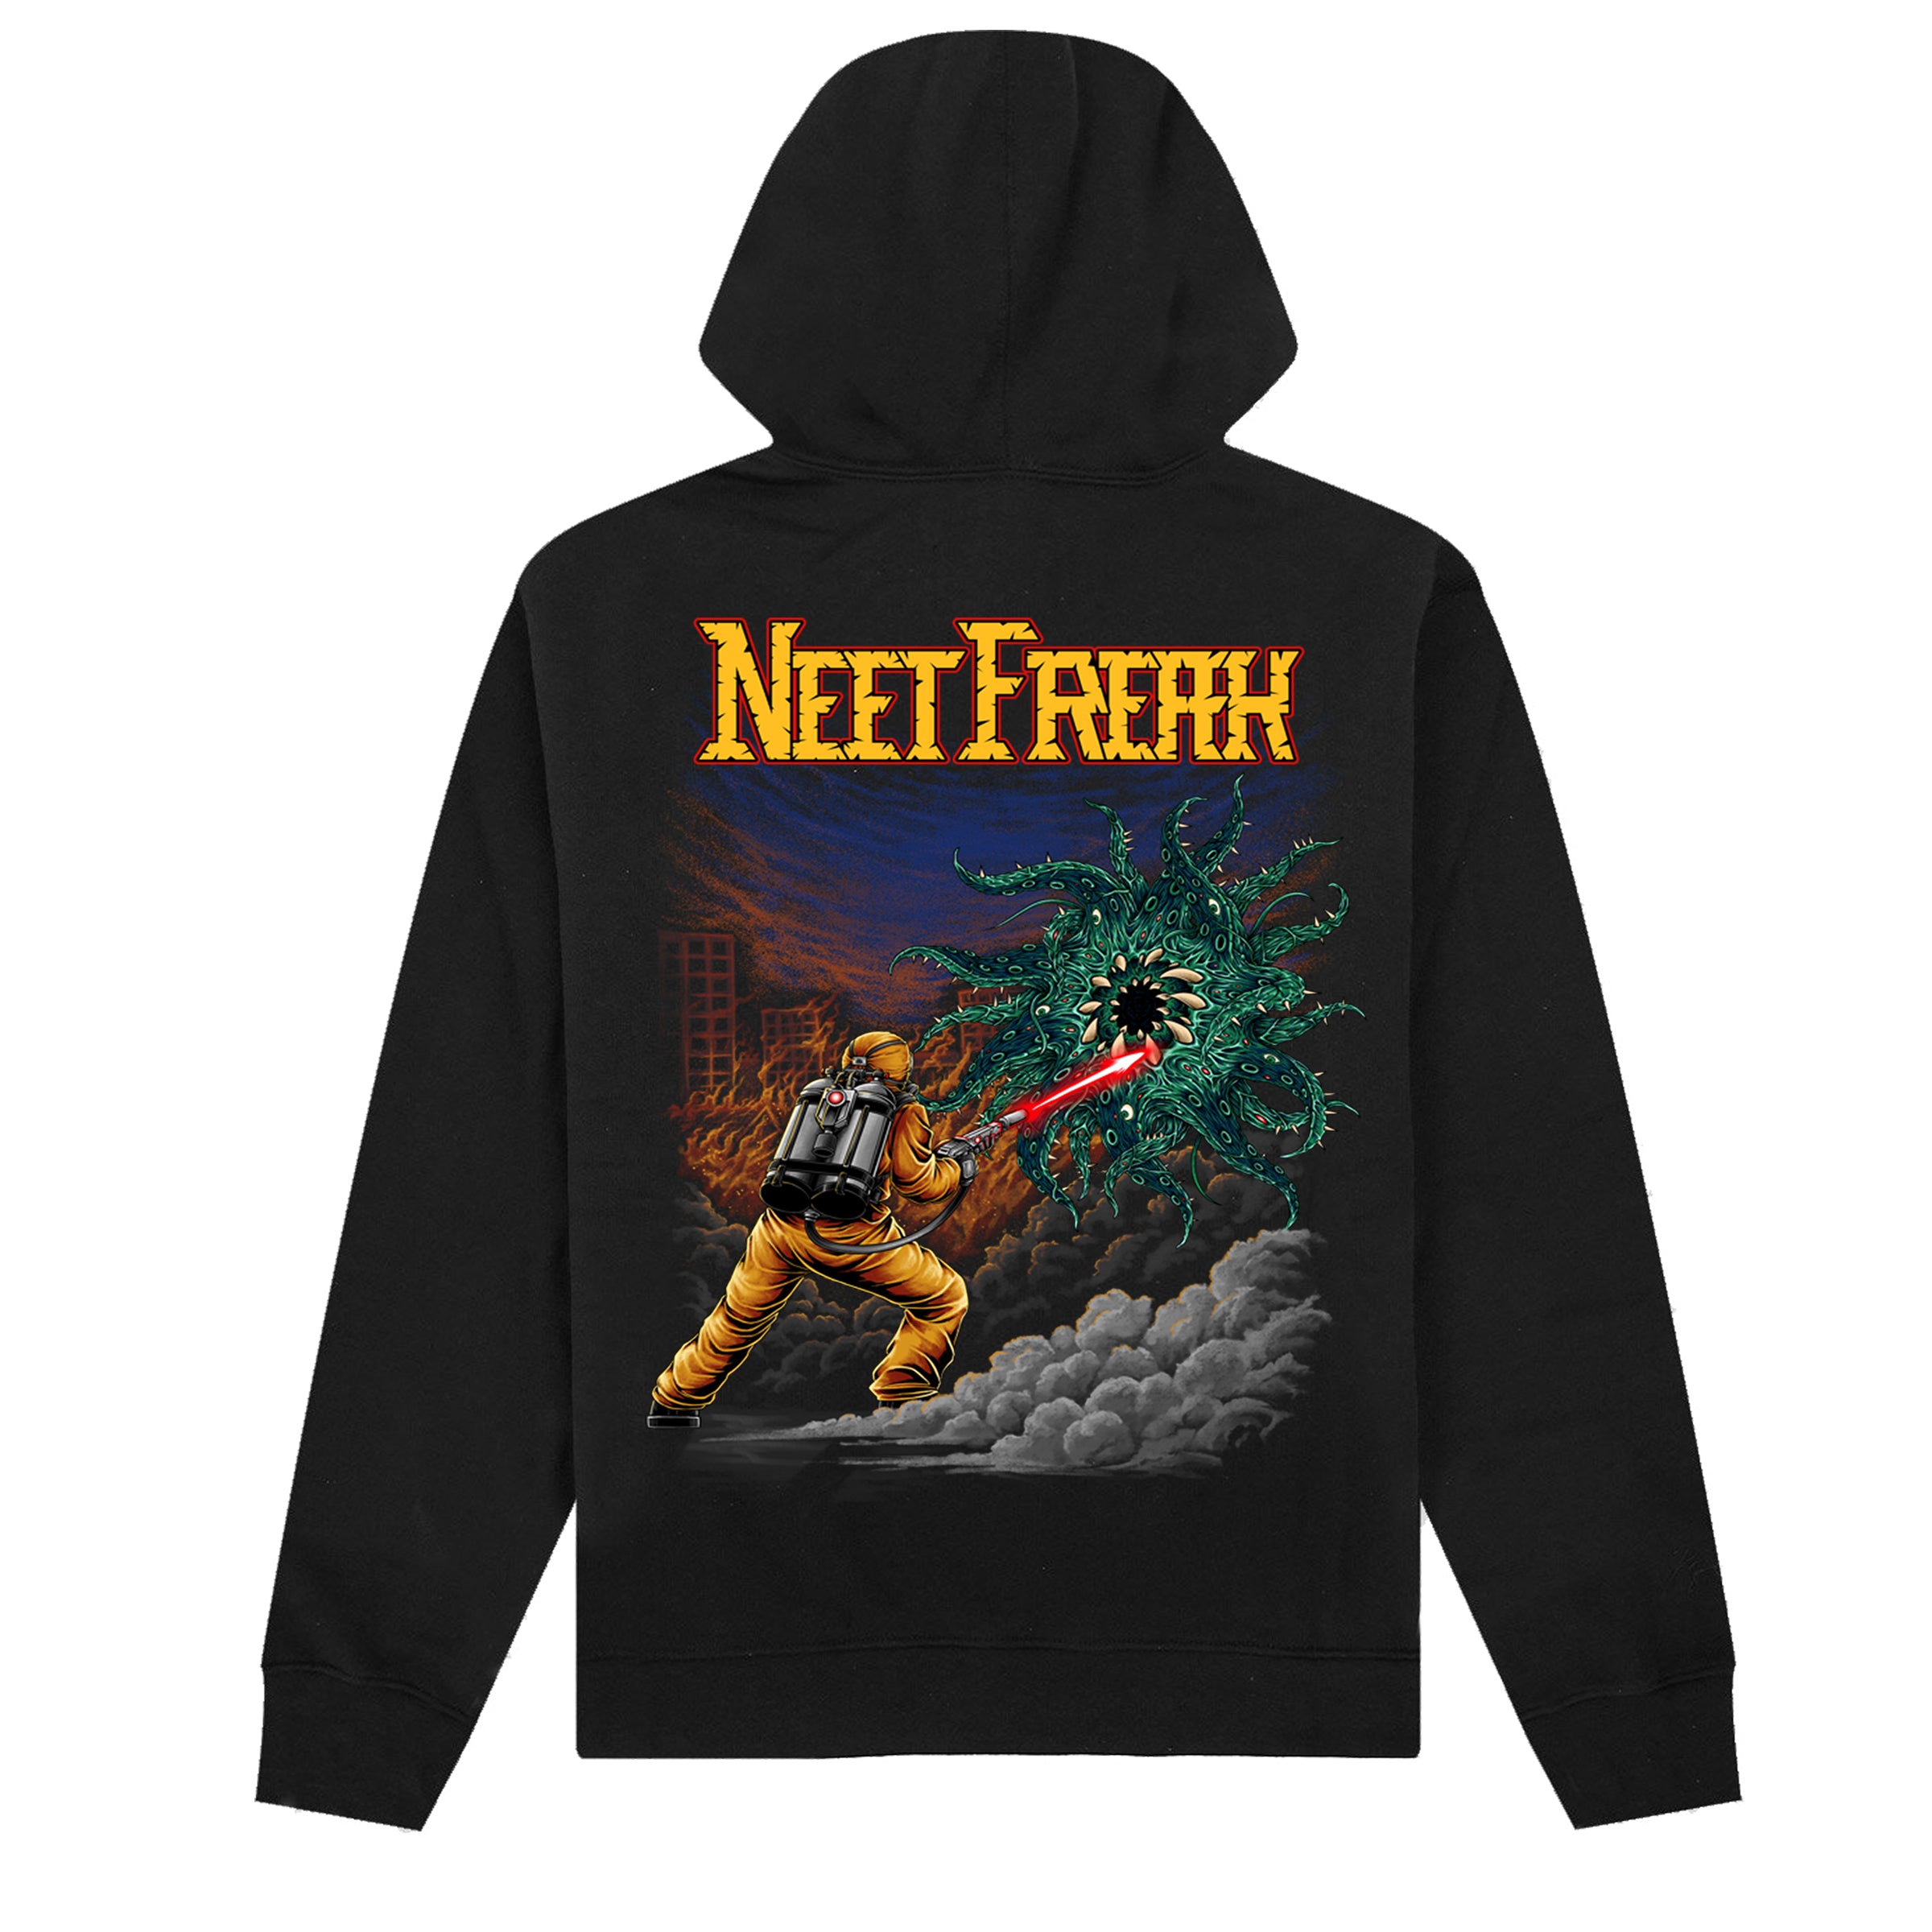 Black hoodie mens. Black hoodie for men.- Neet Freak Clothing